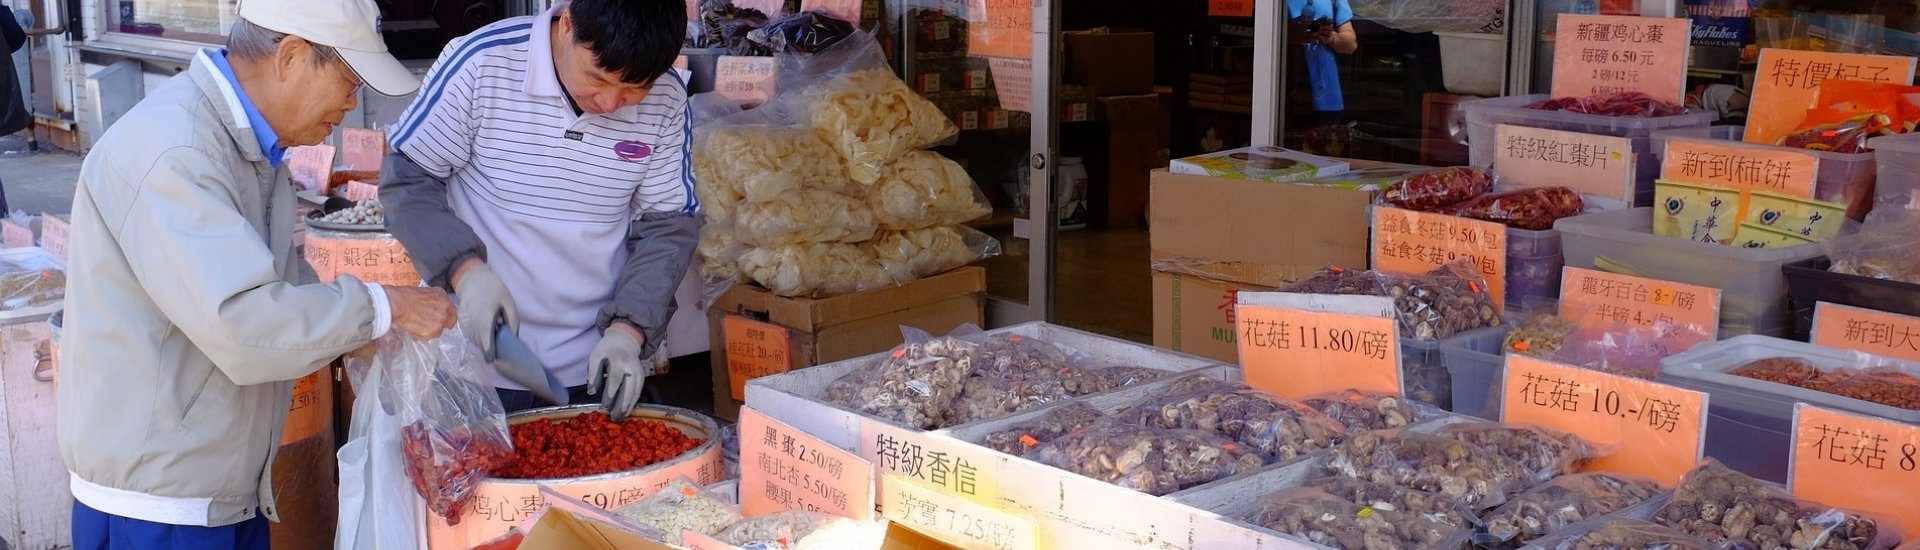 Market in Chinatown